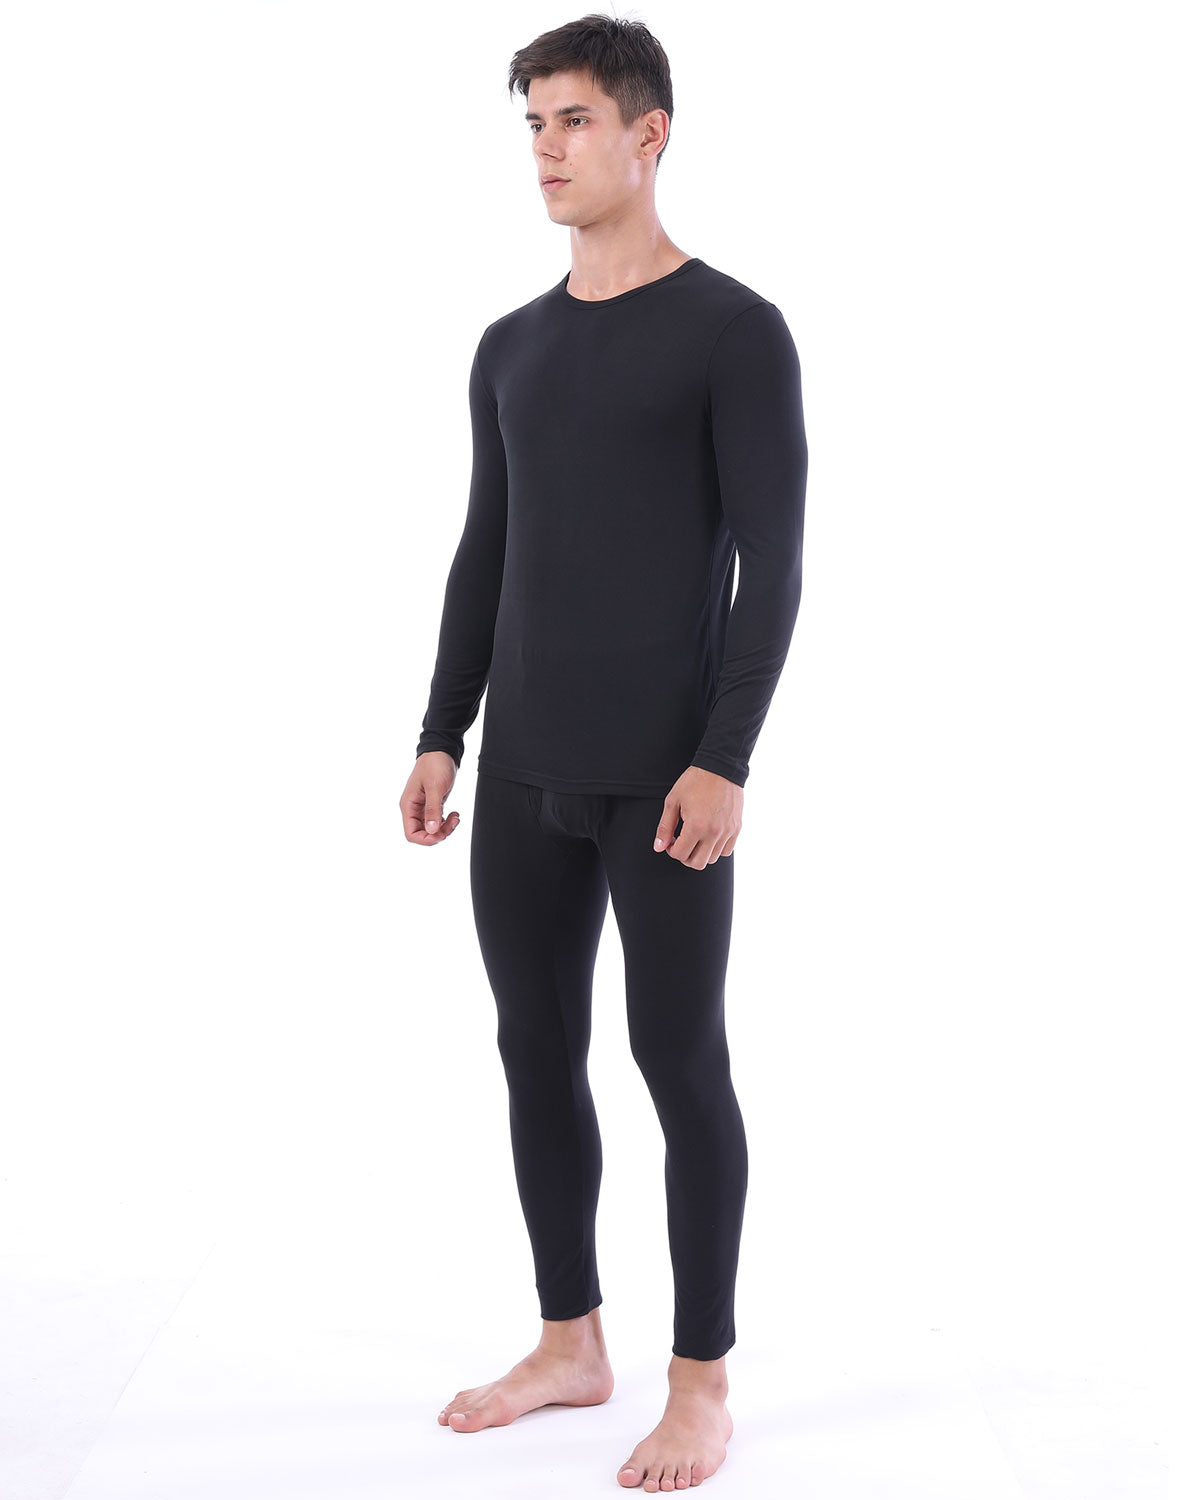 LANBAOSI Mens Thermal Underwear Set Long Johns Set with Fleece